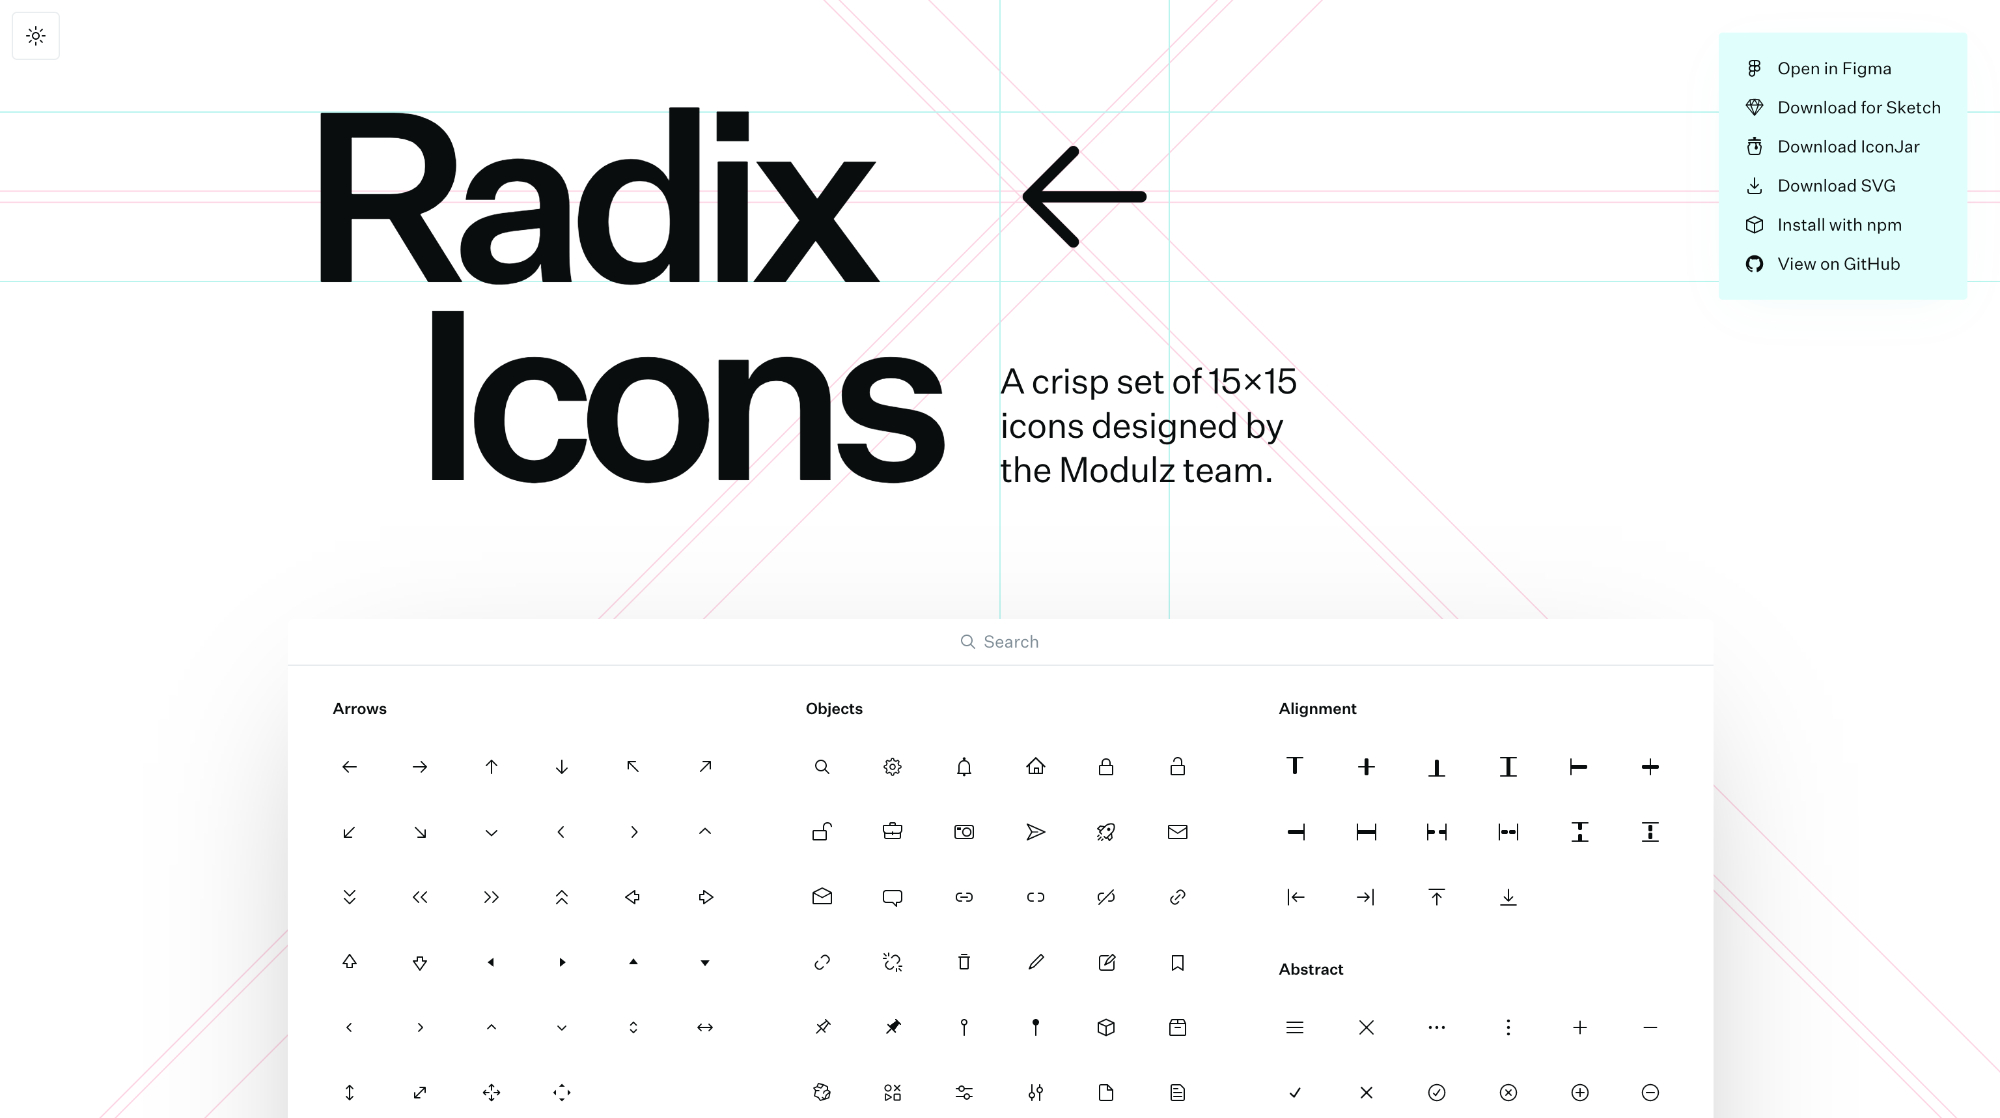 Radix icon pack website